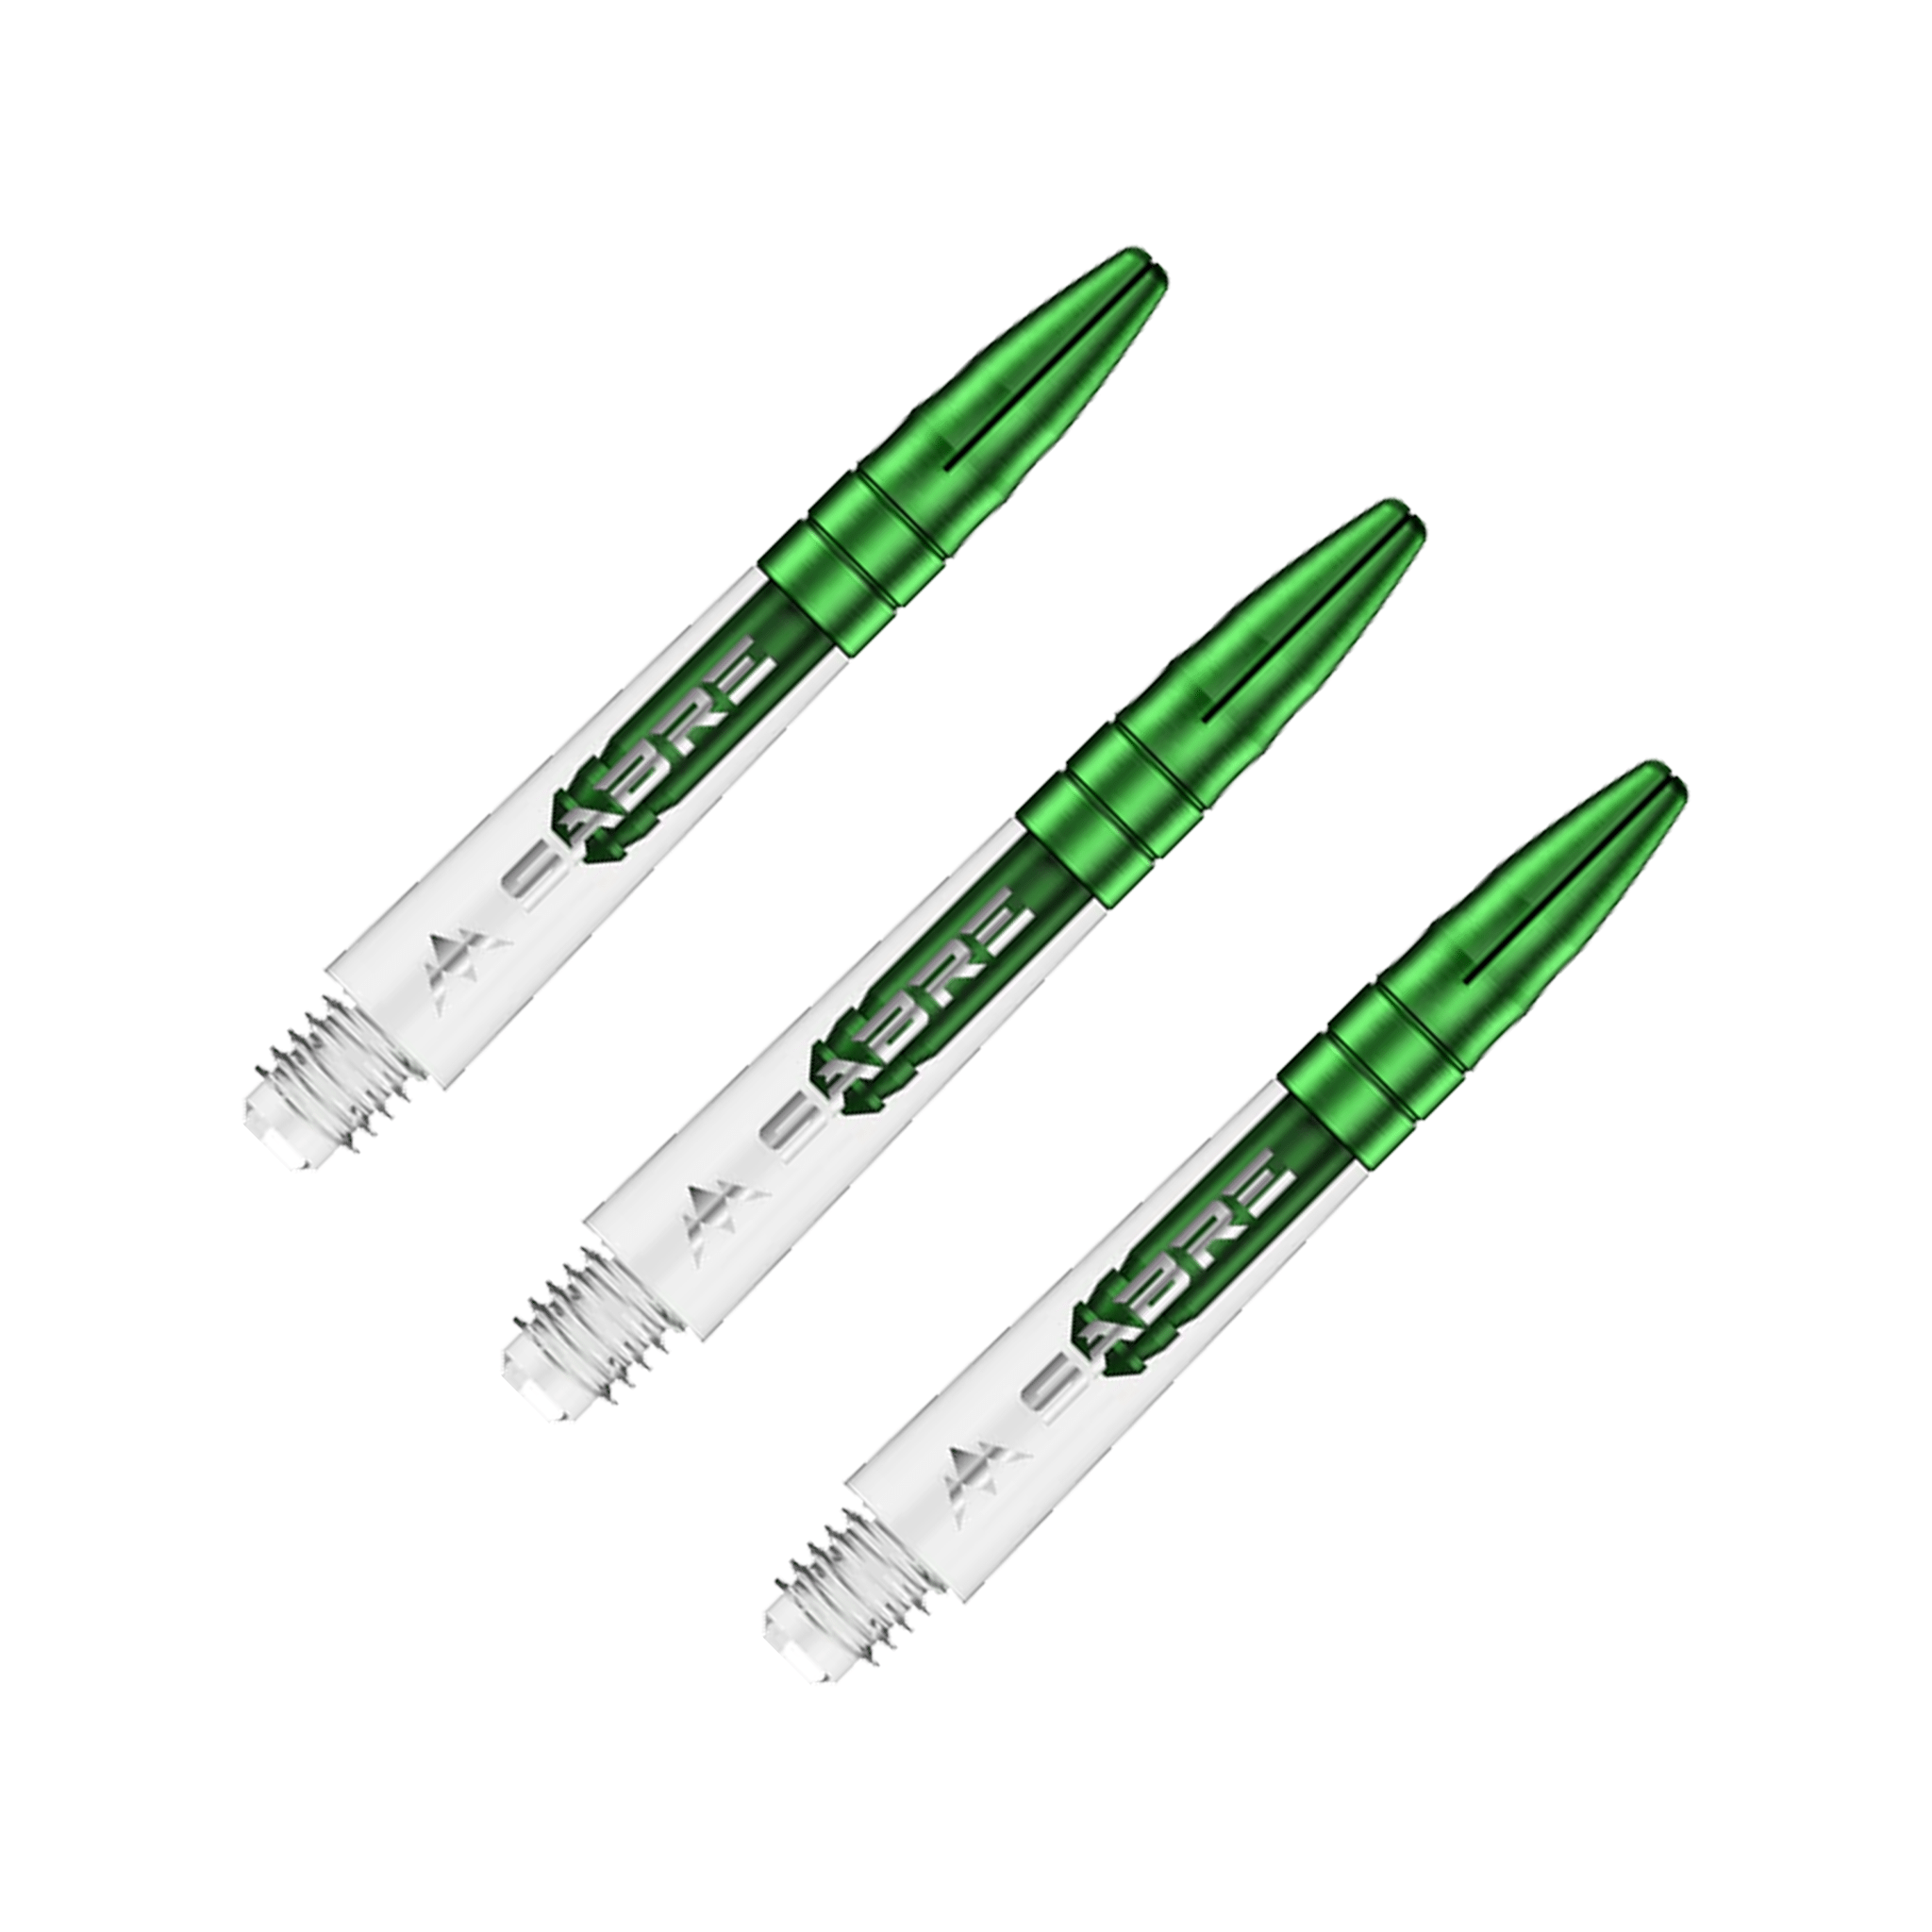 Mission Sabre - Polycarbonate Dart Shafts Short (36mm) / Clear & Green Shafts